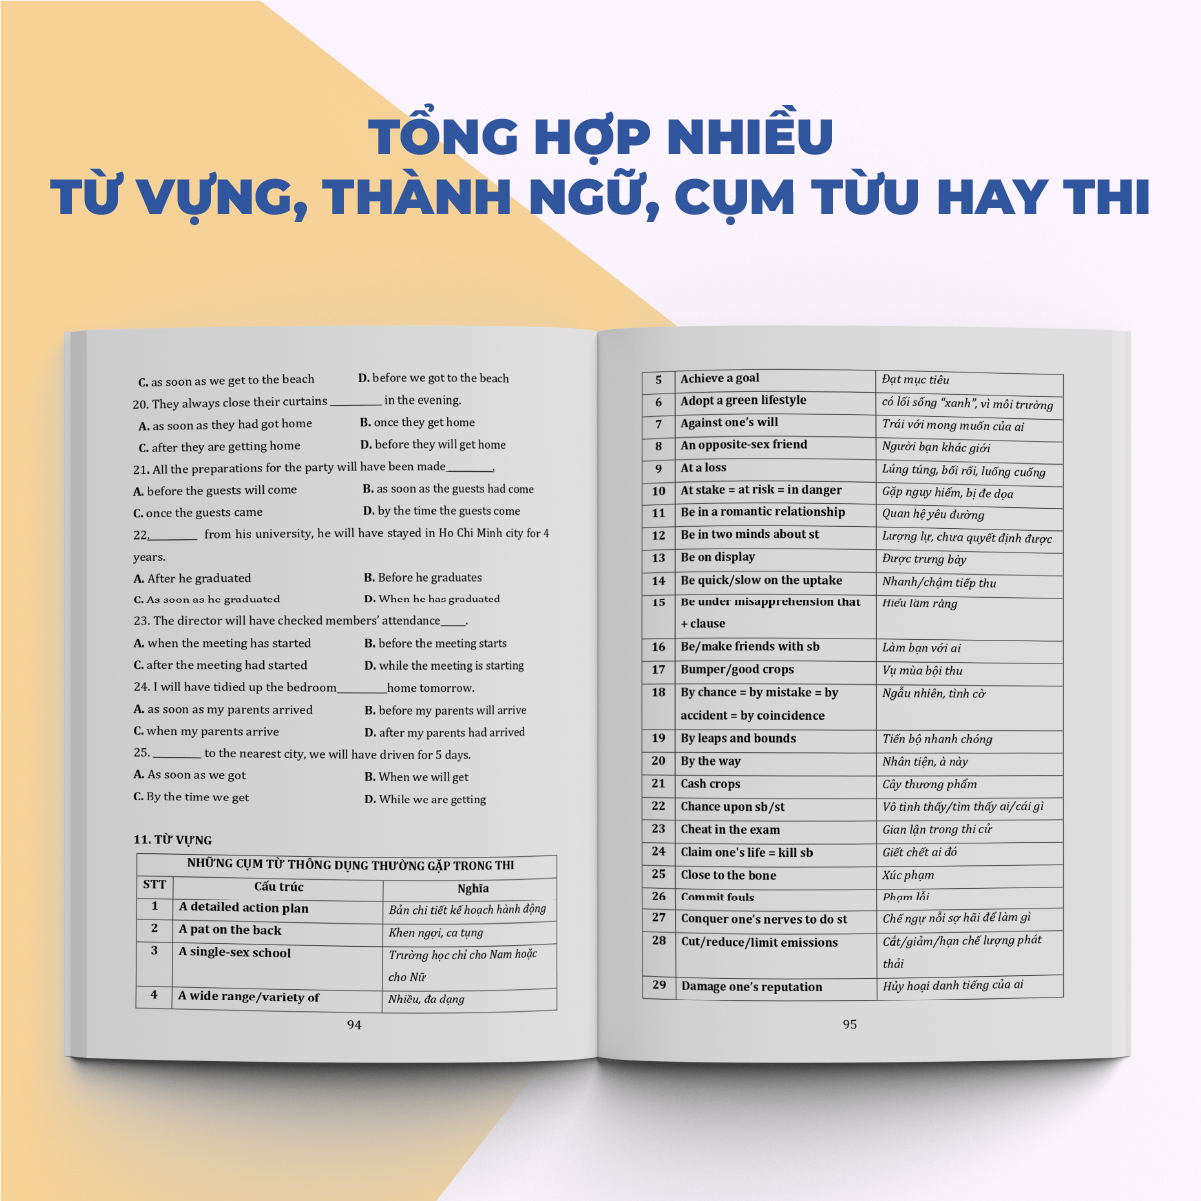 Sách trọng tâm kiến thức tiếng anh cô Trang Anh, luyện thi thpt quốc gia 2023 moonbook